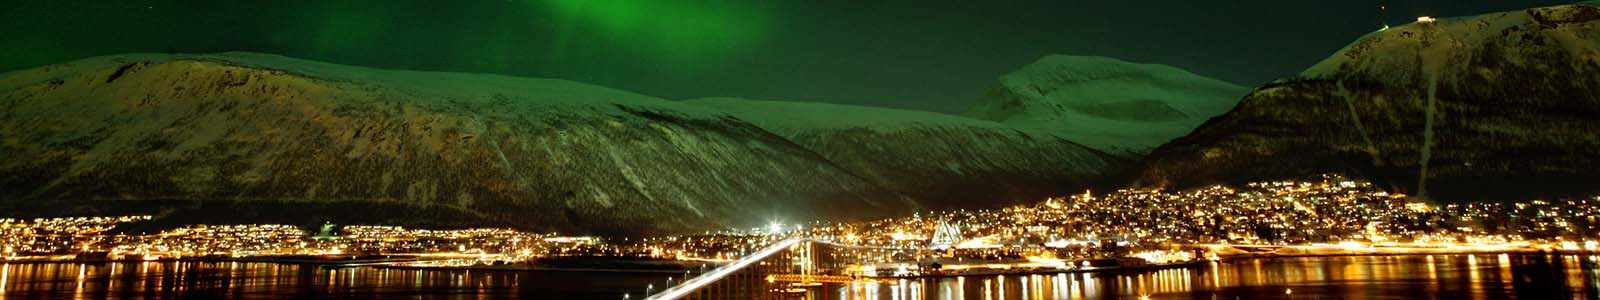 Reizen naar het noorderlicht in Tromsø